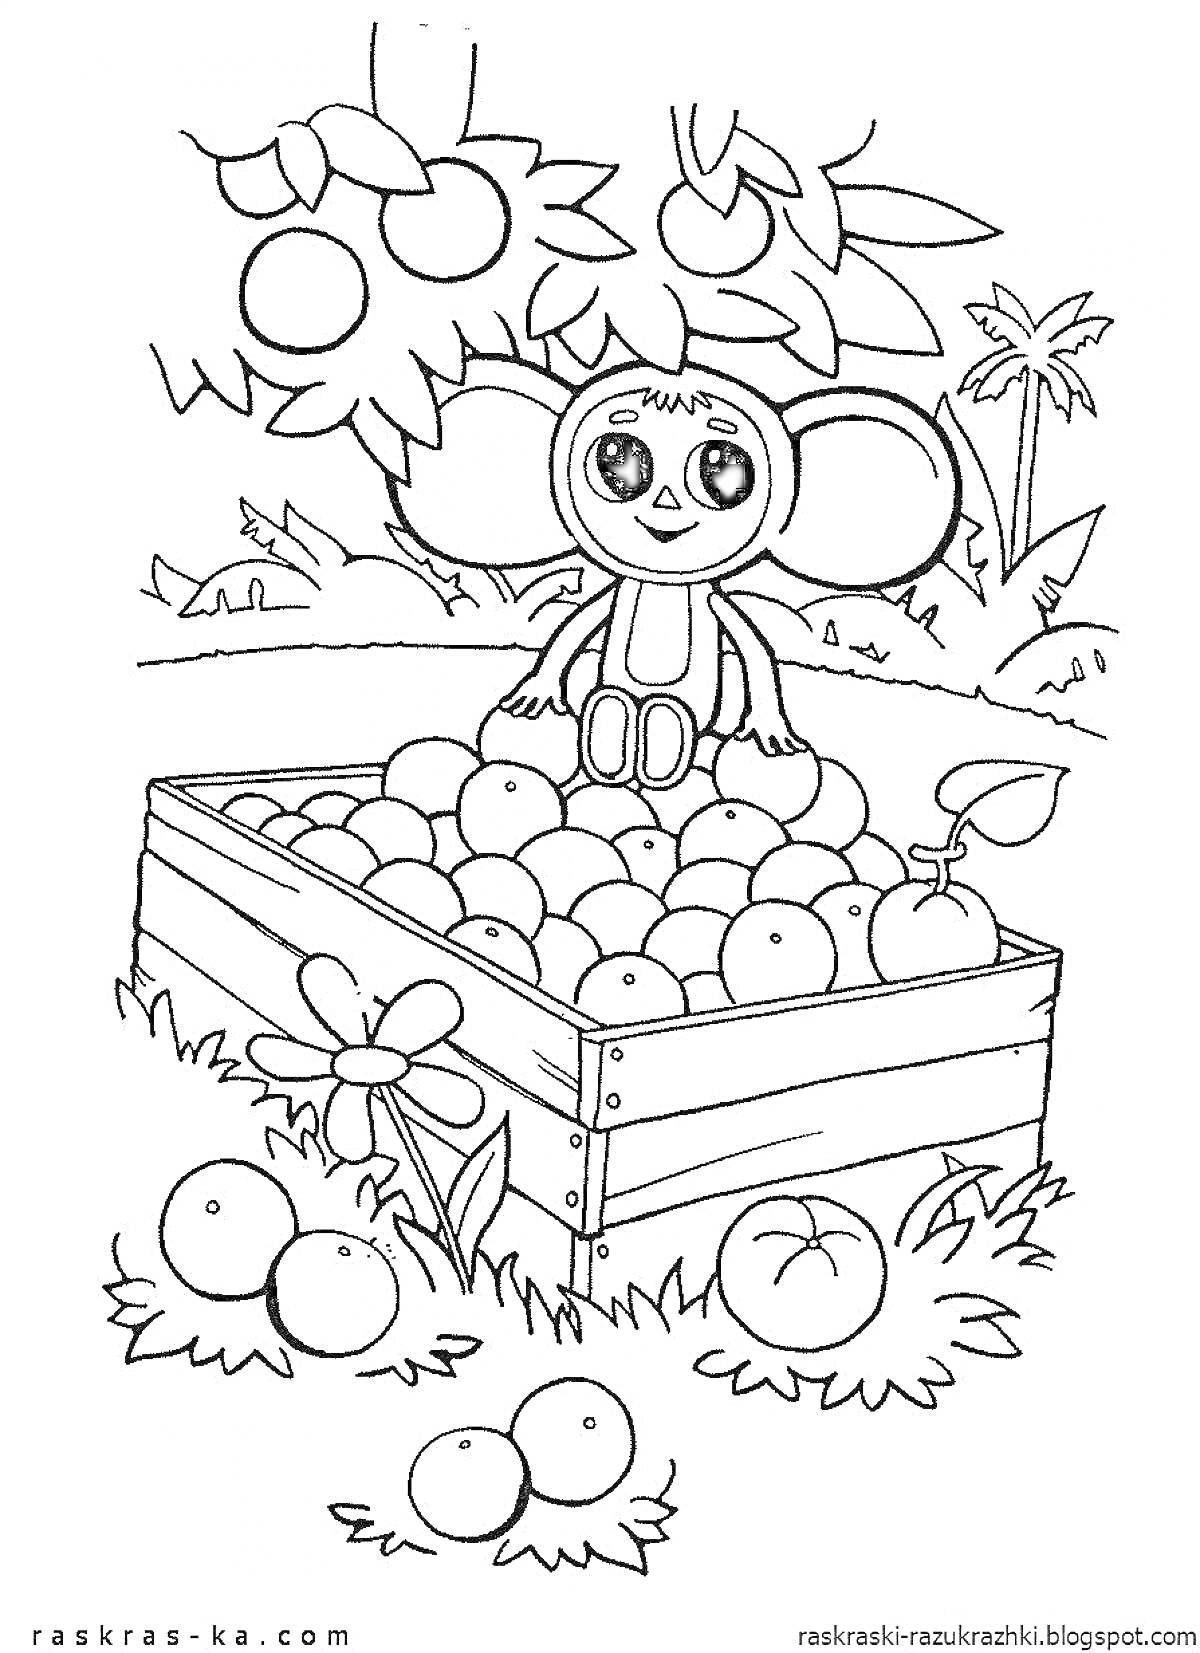  Чебурашка сидит на ящике, полном фруктов под яблоней